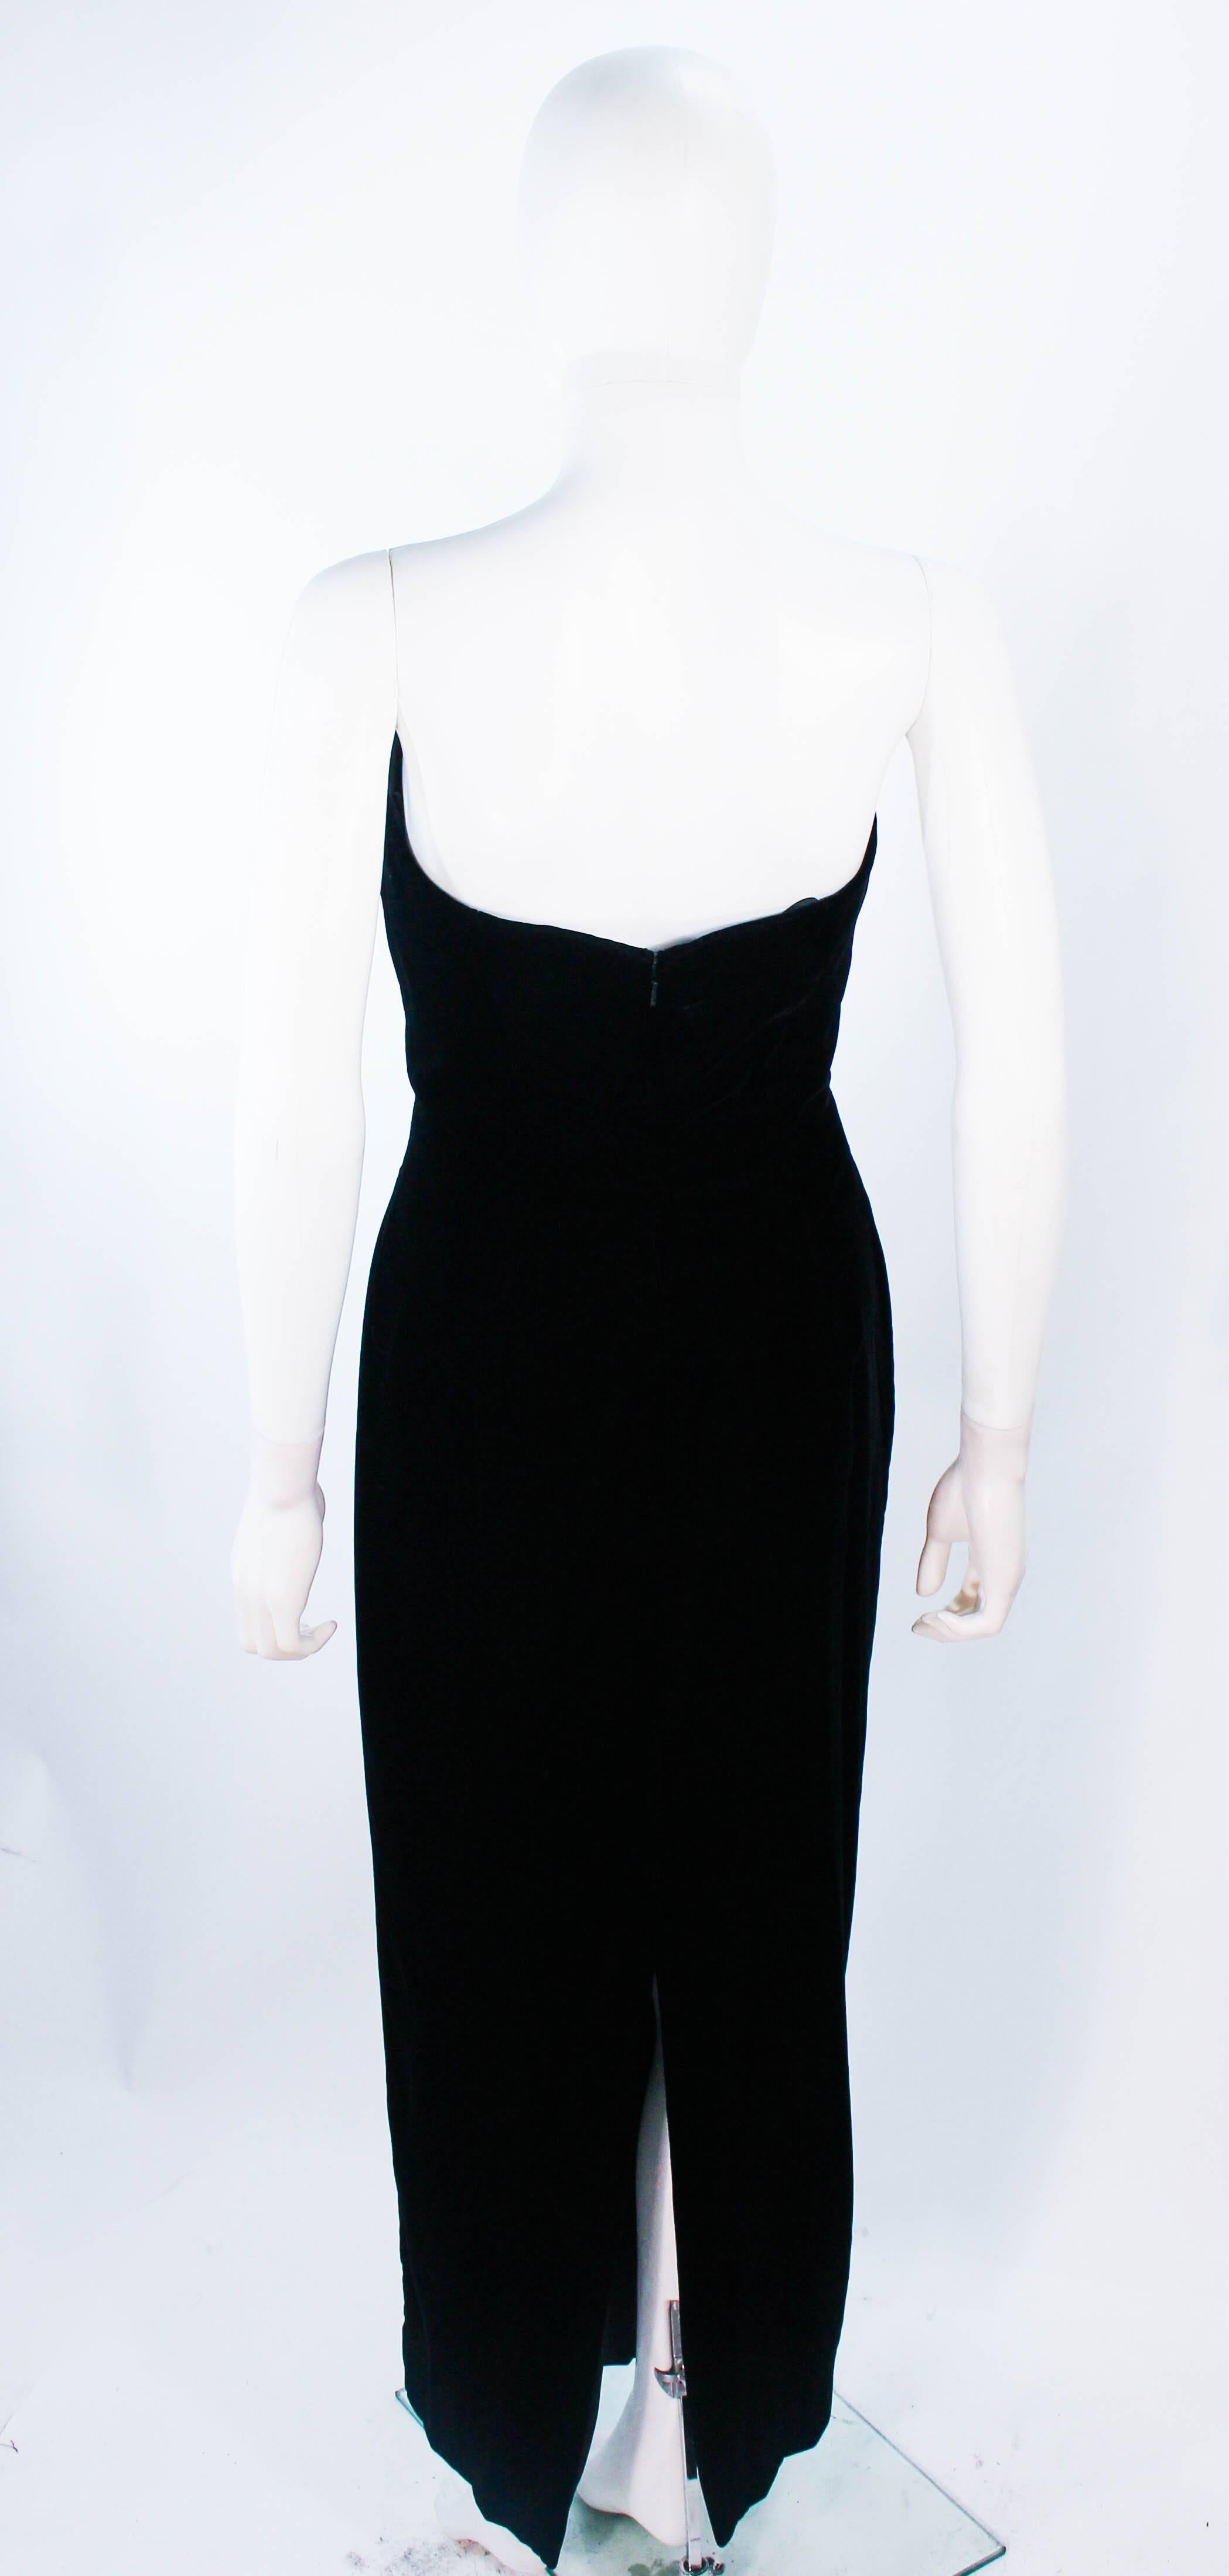 OLEG CASSINI Black Tie Black Velvet Sweet Heart Strapless Beaded Gown Size 8 10 For Sale 3